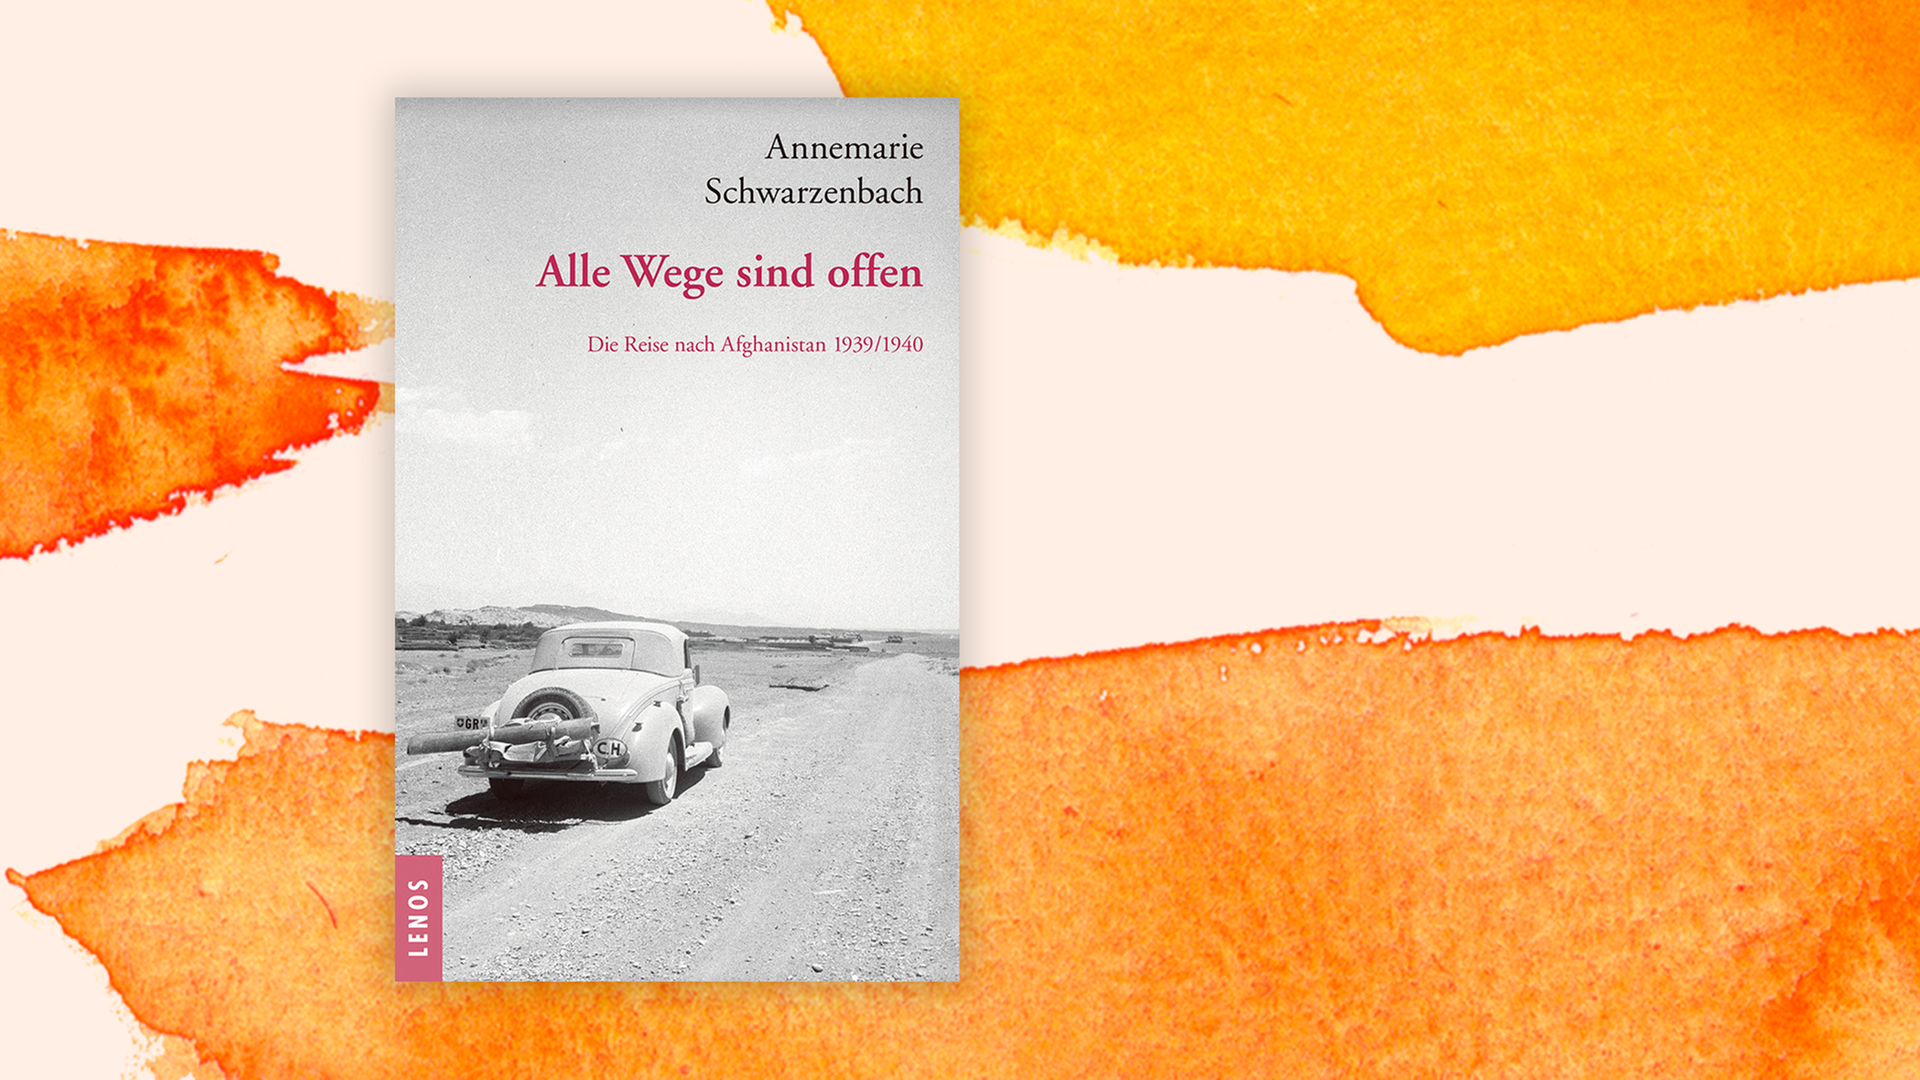 Zu sehen ist das Cover des Buches "Alle Wege sind offen" von Annemarie Schwarzenbach.